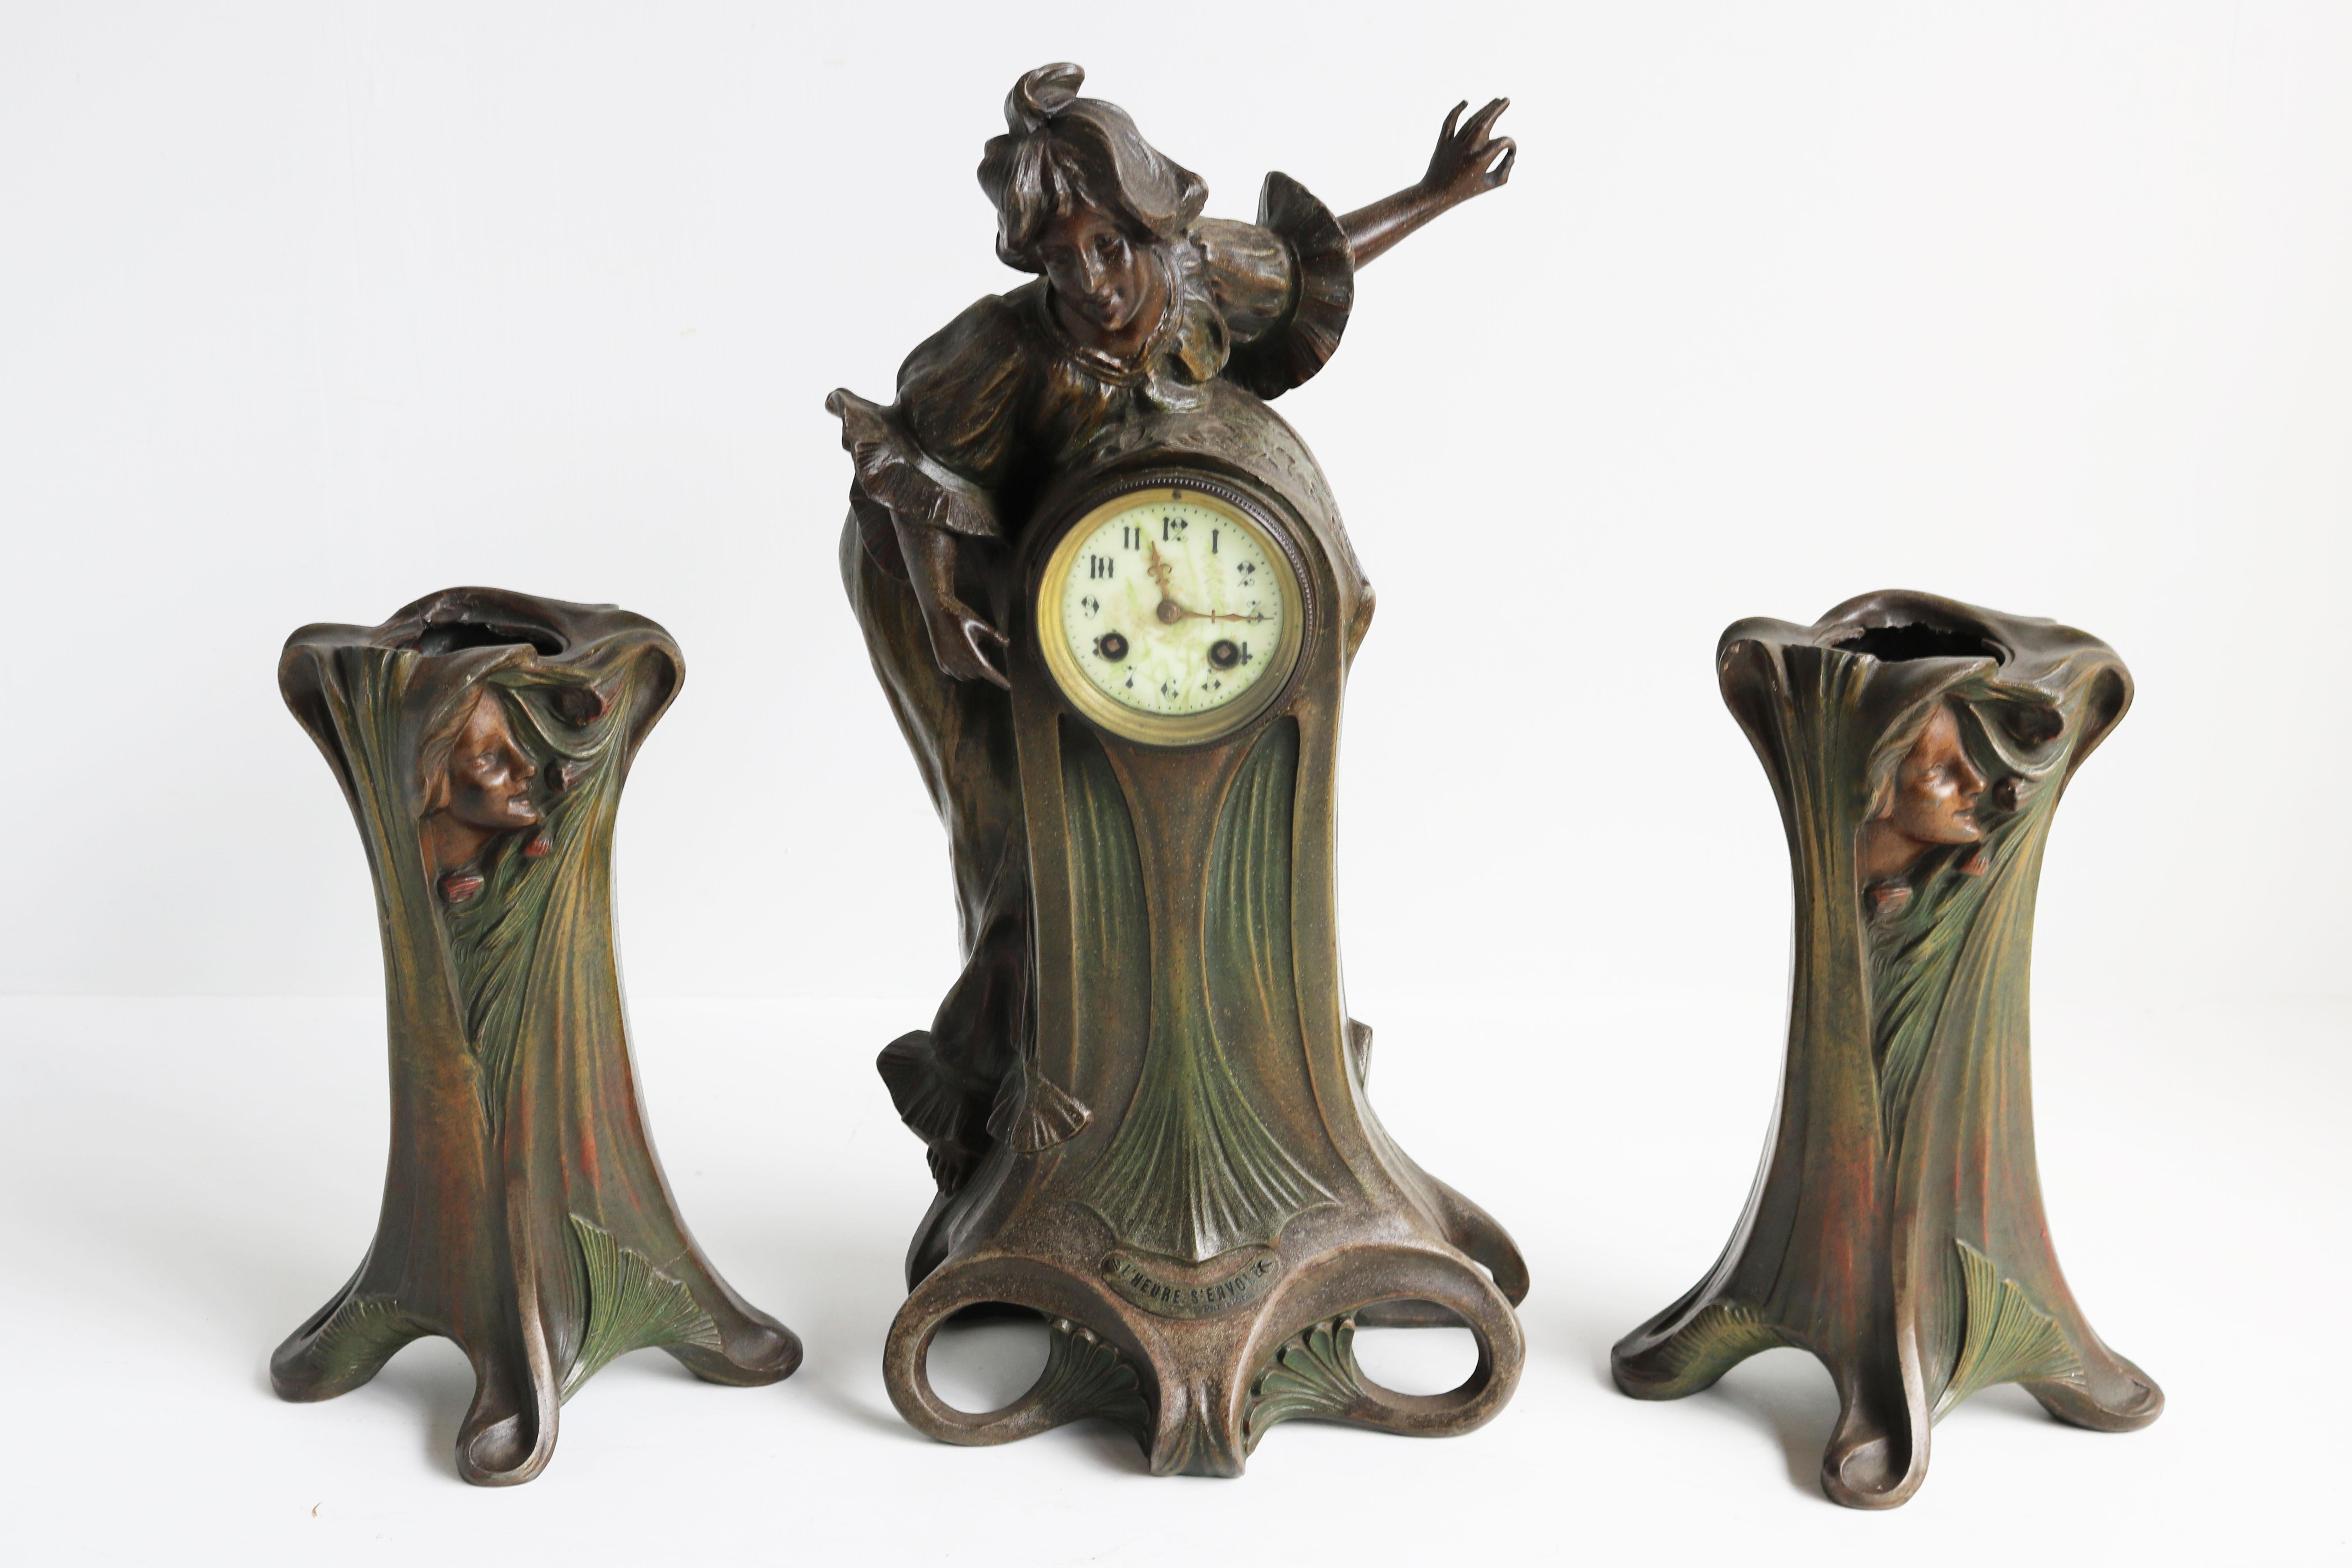 Art Nouveau Clock Set by Francesco Flora 1890 Antique Three Piece French Mantel For Sale 9